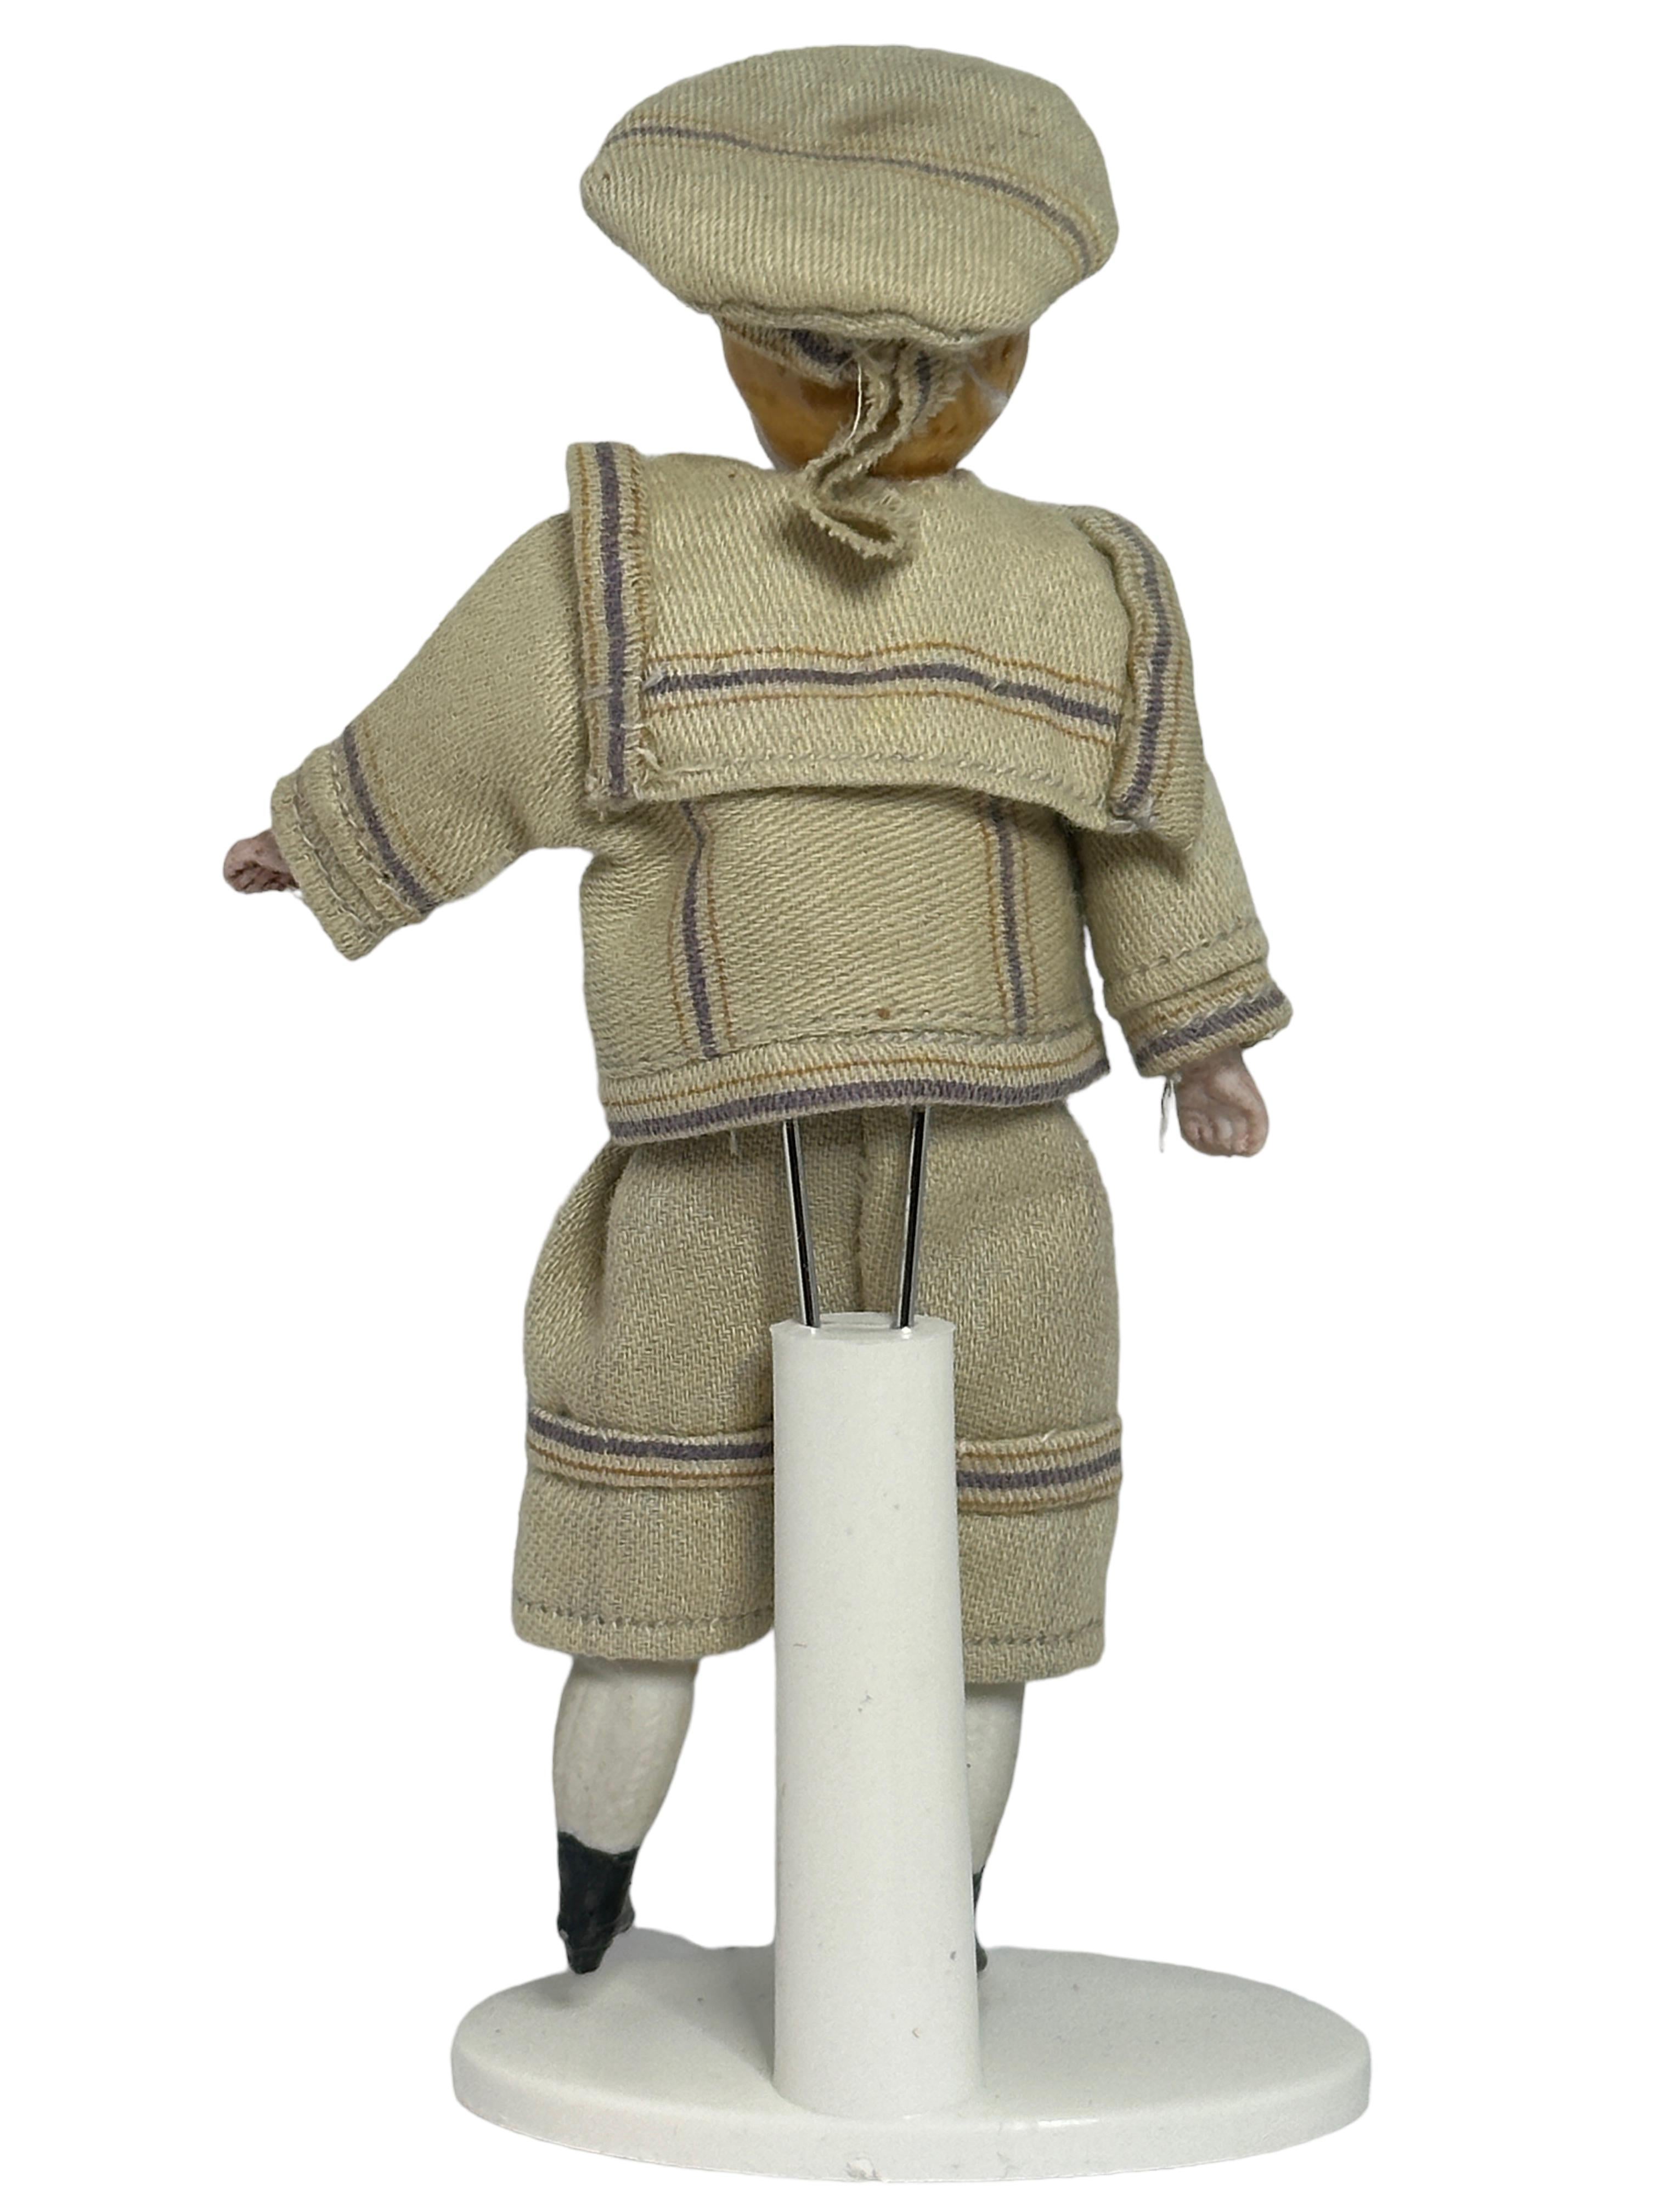 Artisanat Garçon vêtu d'un costume de marin Antique German Dollhouse Doll Toy 1900s en vente